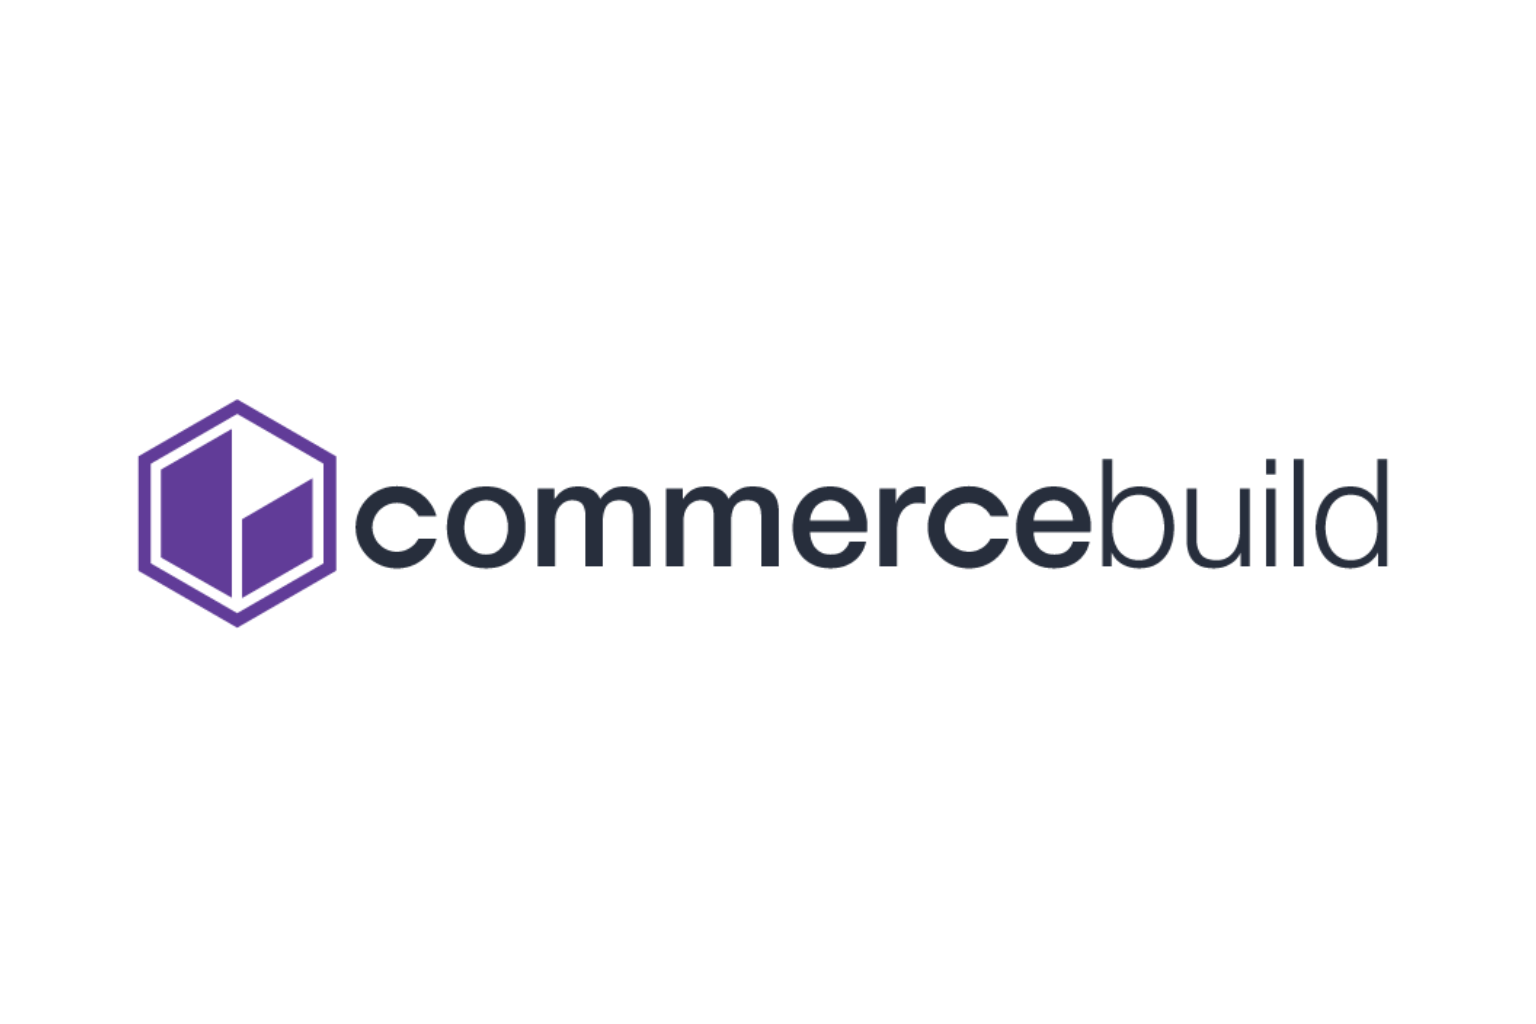 commercebuild-logo.png